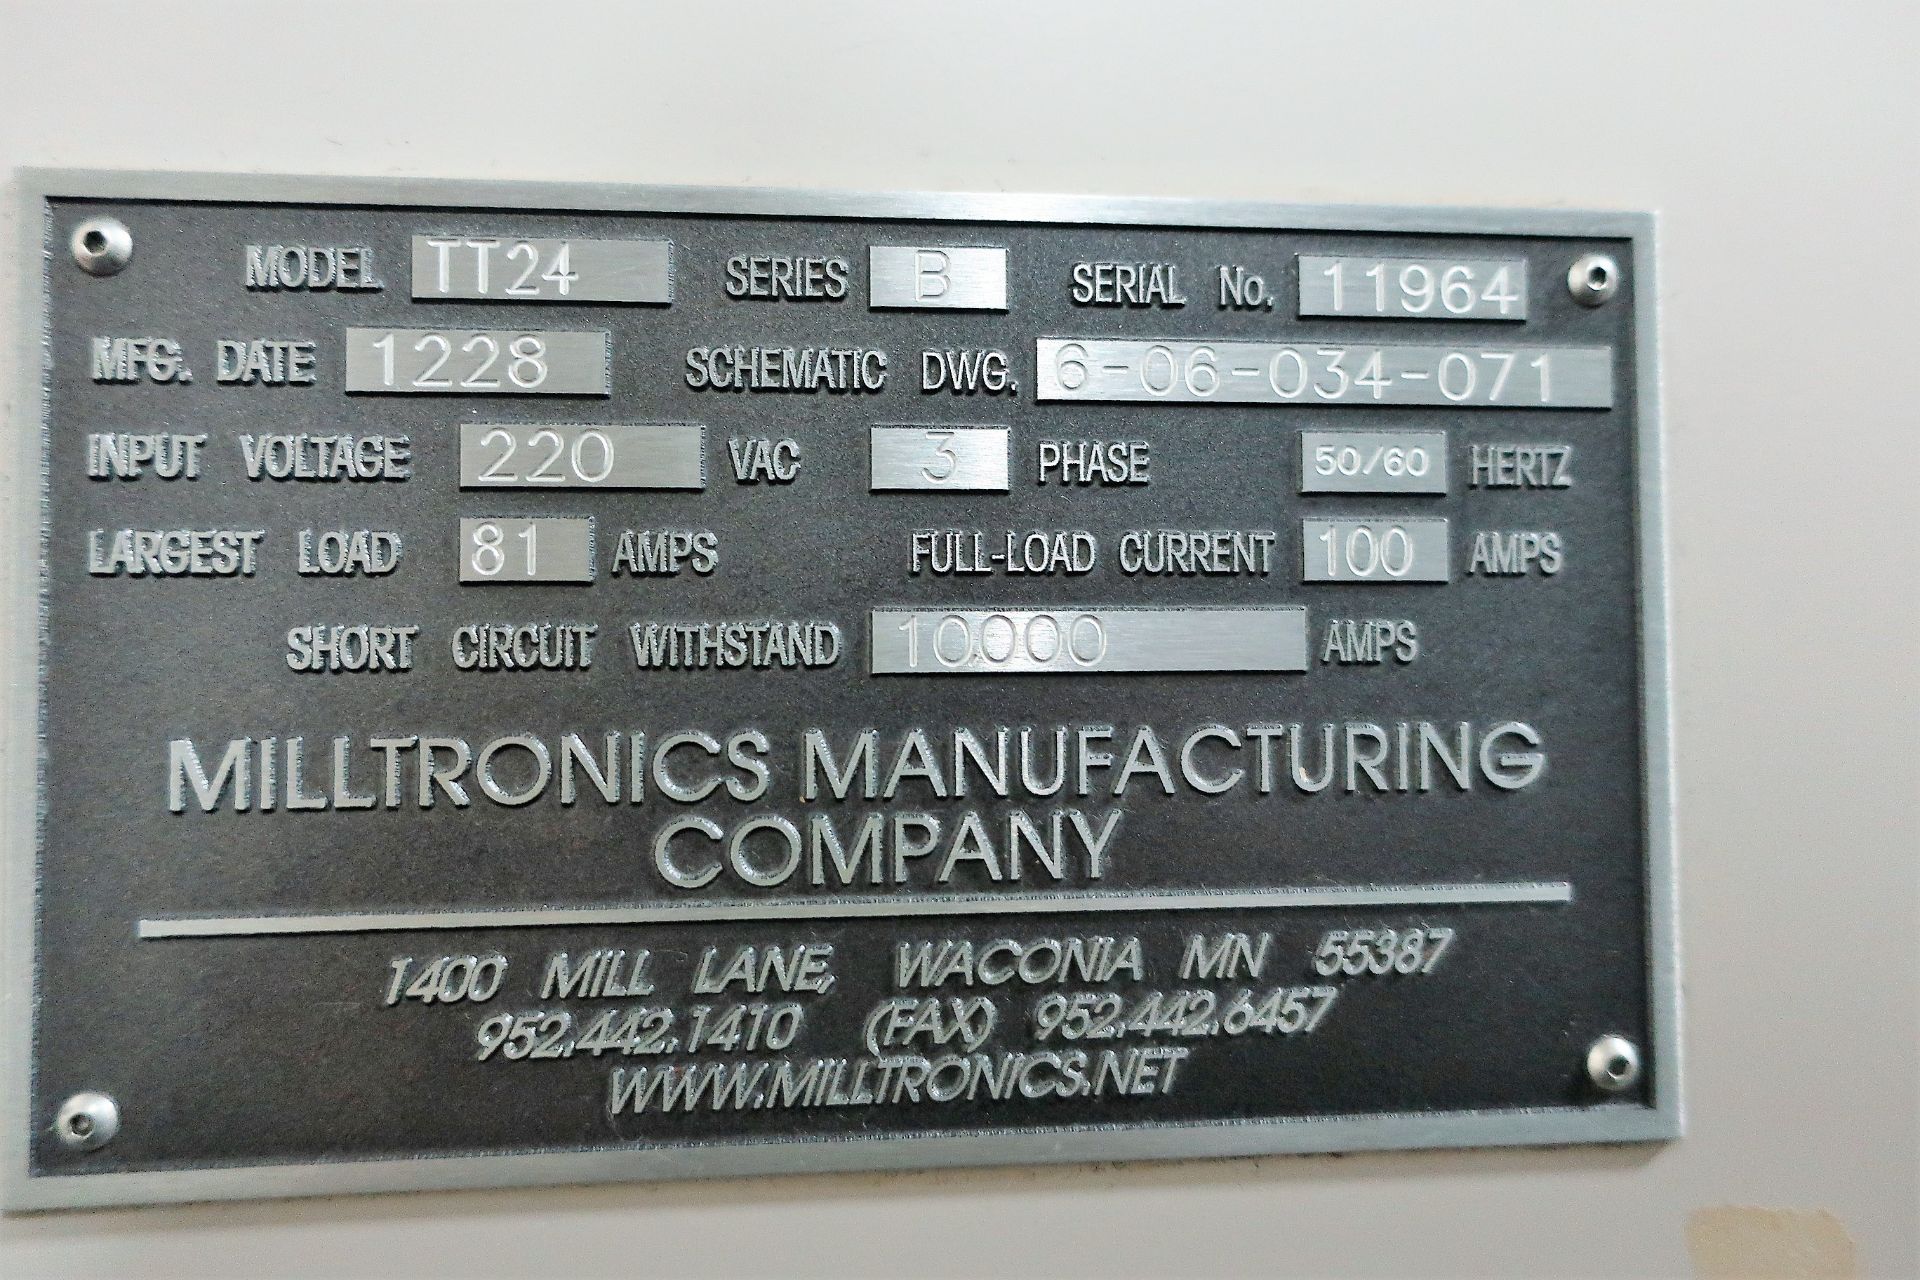 MILLTRONICS TT24 3-AXIS CNC VERTICAL MACHINING CENTER W/PALLET CHANGER, S/N 11964, NEW 2012 - Image 9 of 11